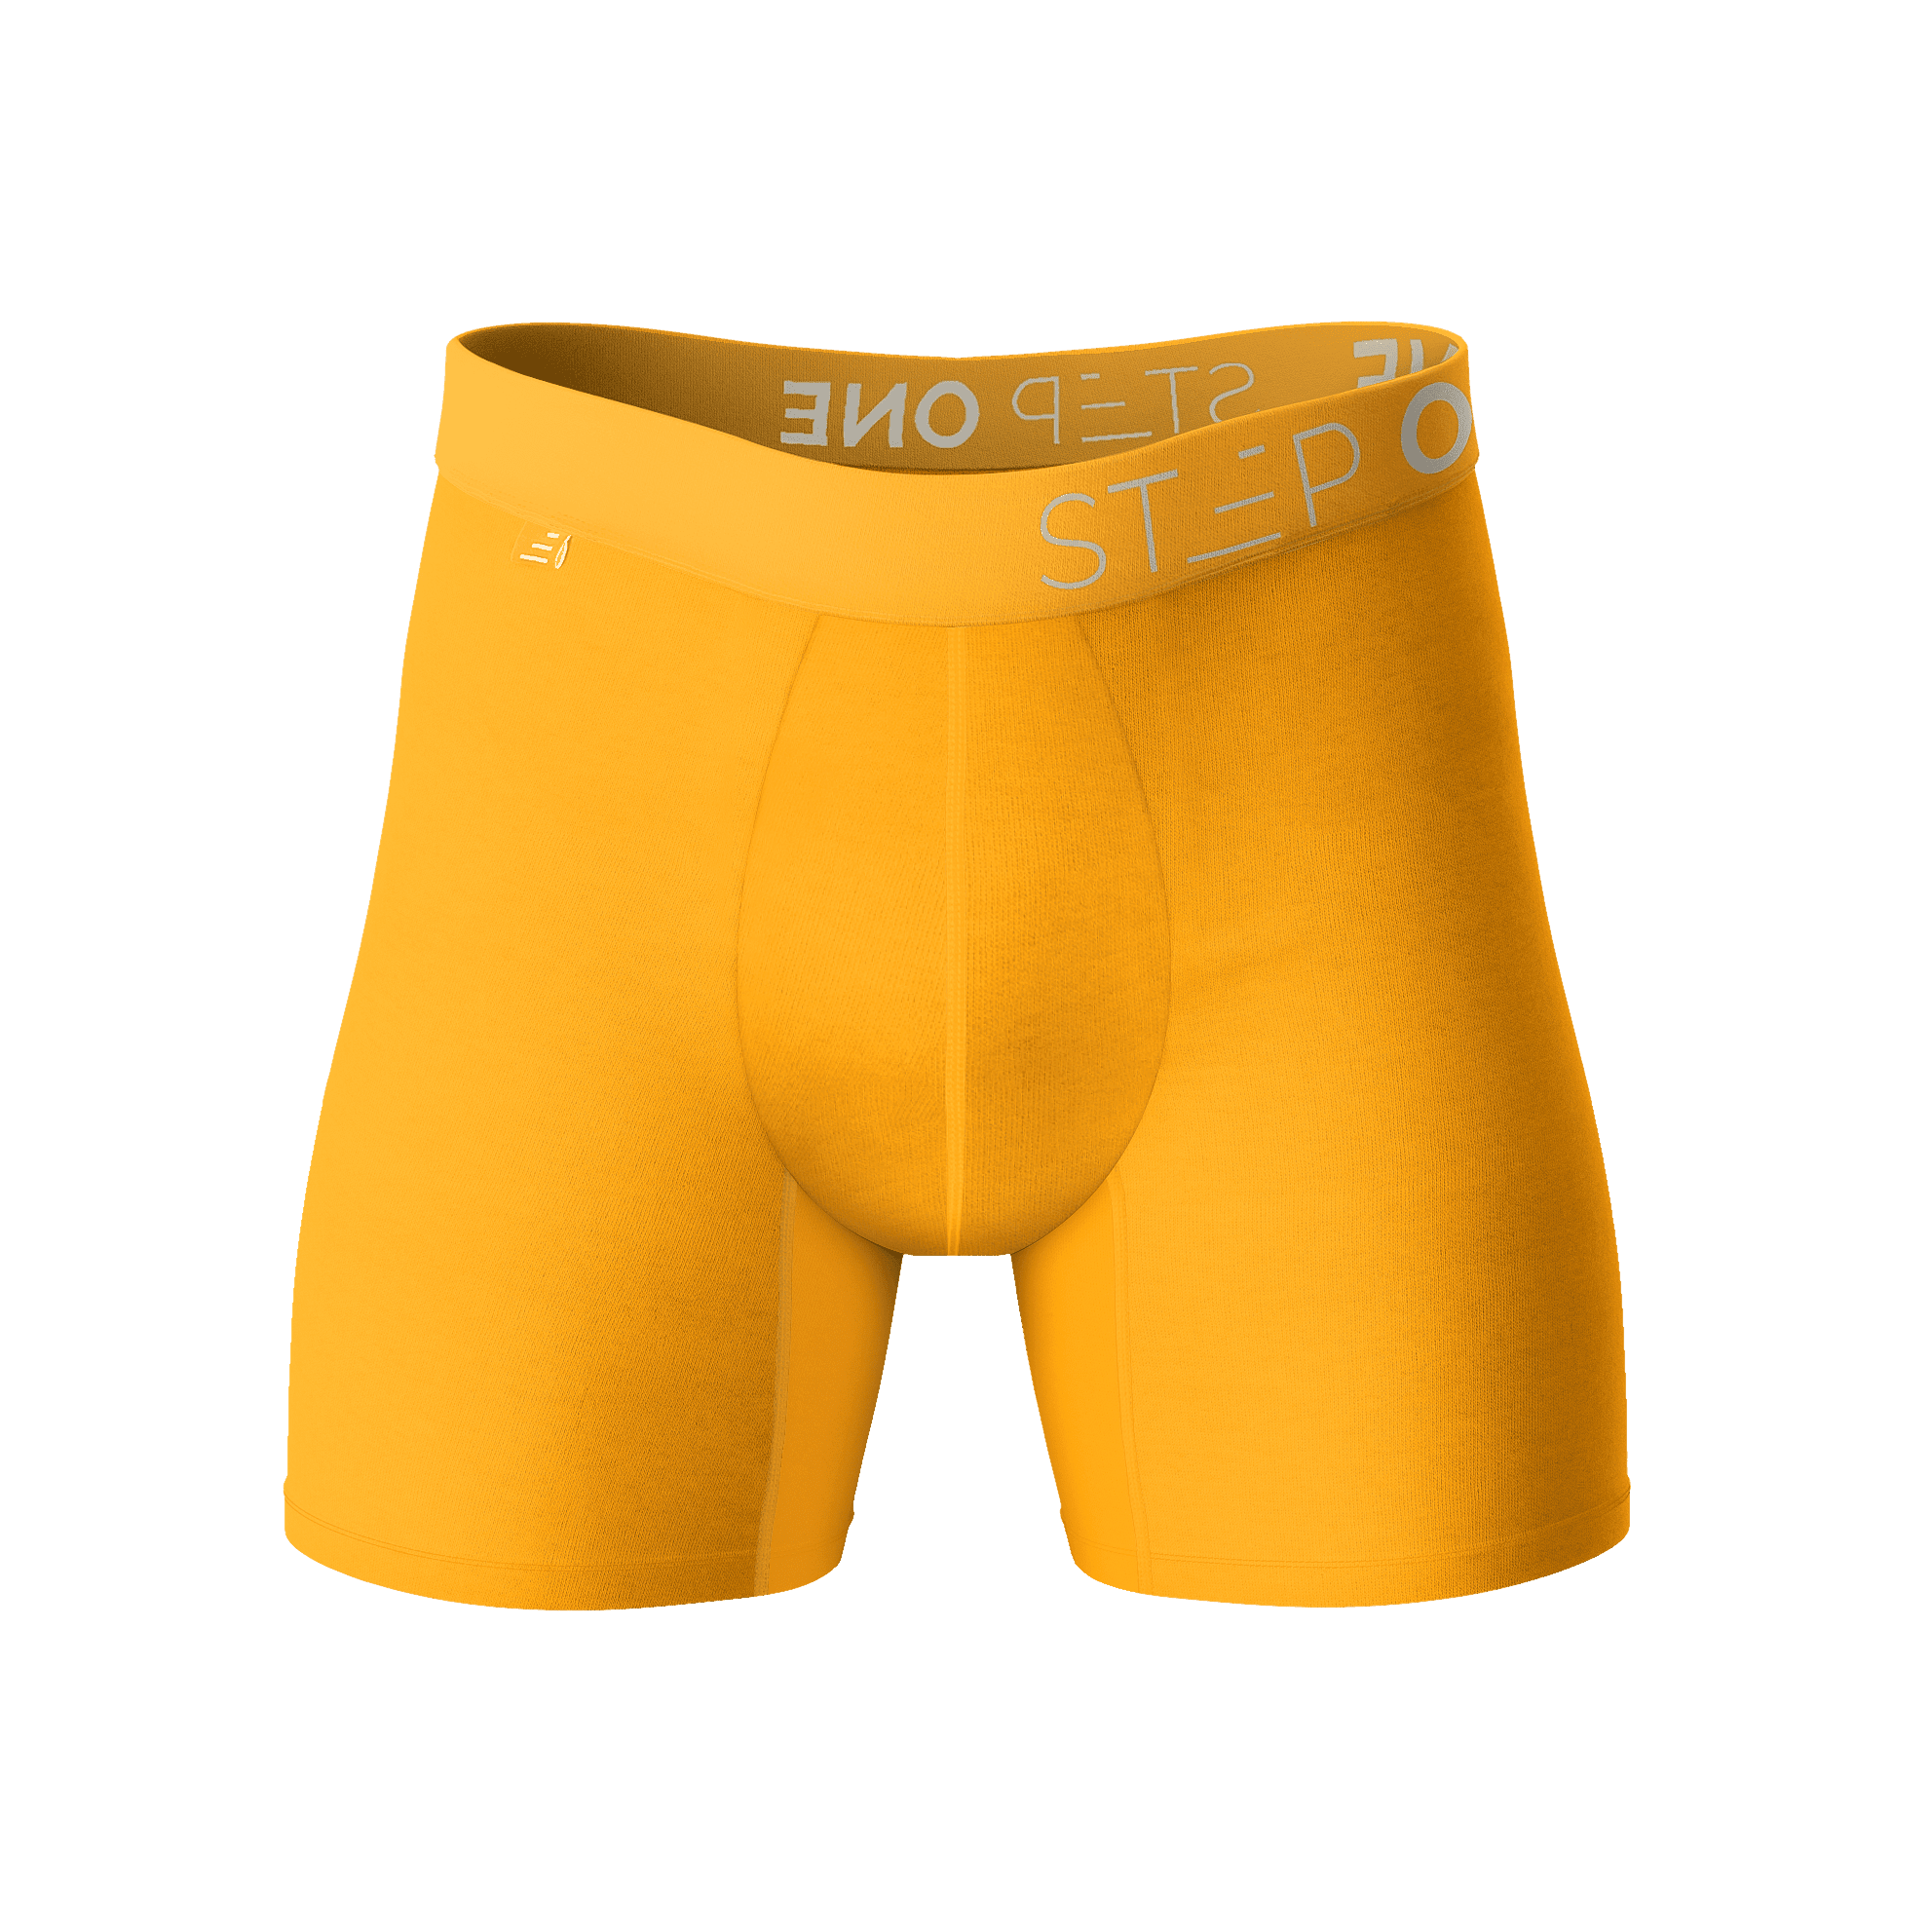 Boxer Brief - Egg Yolks  Step One Men's Underwear